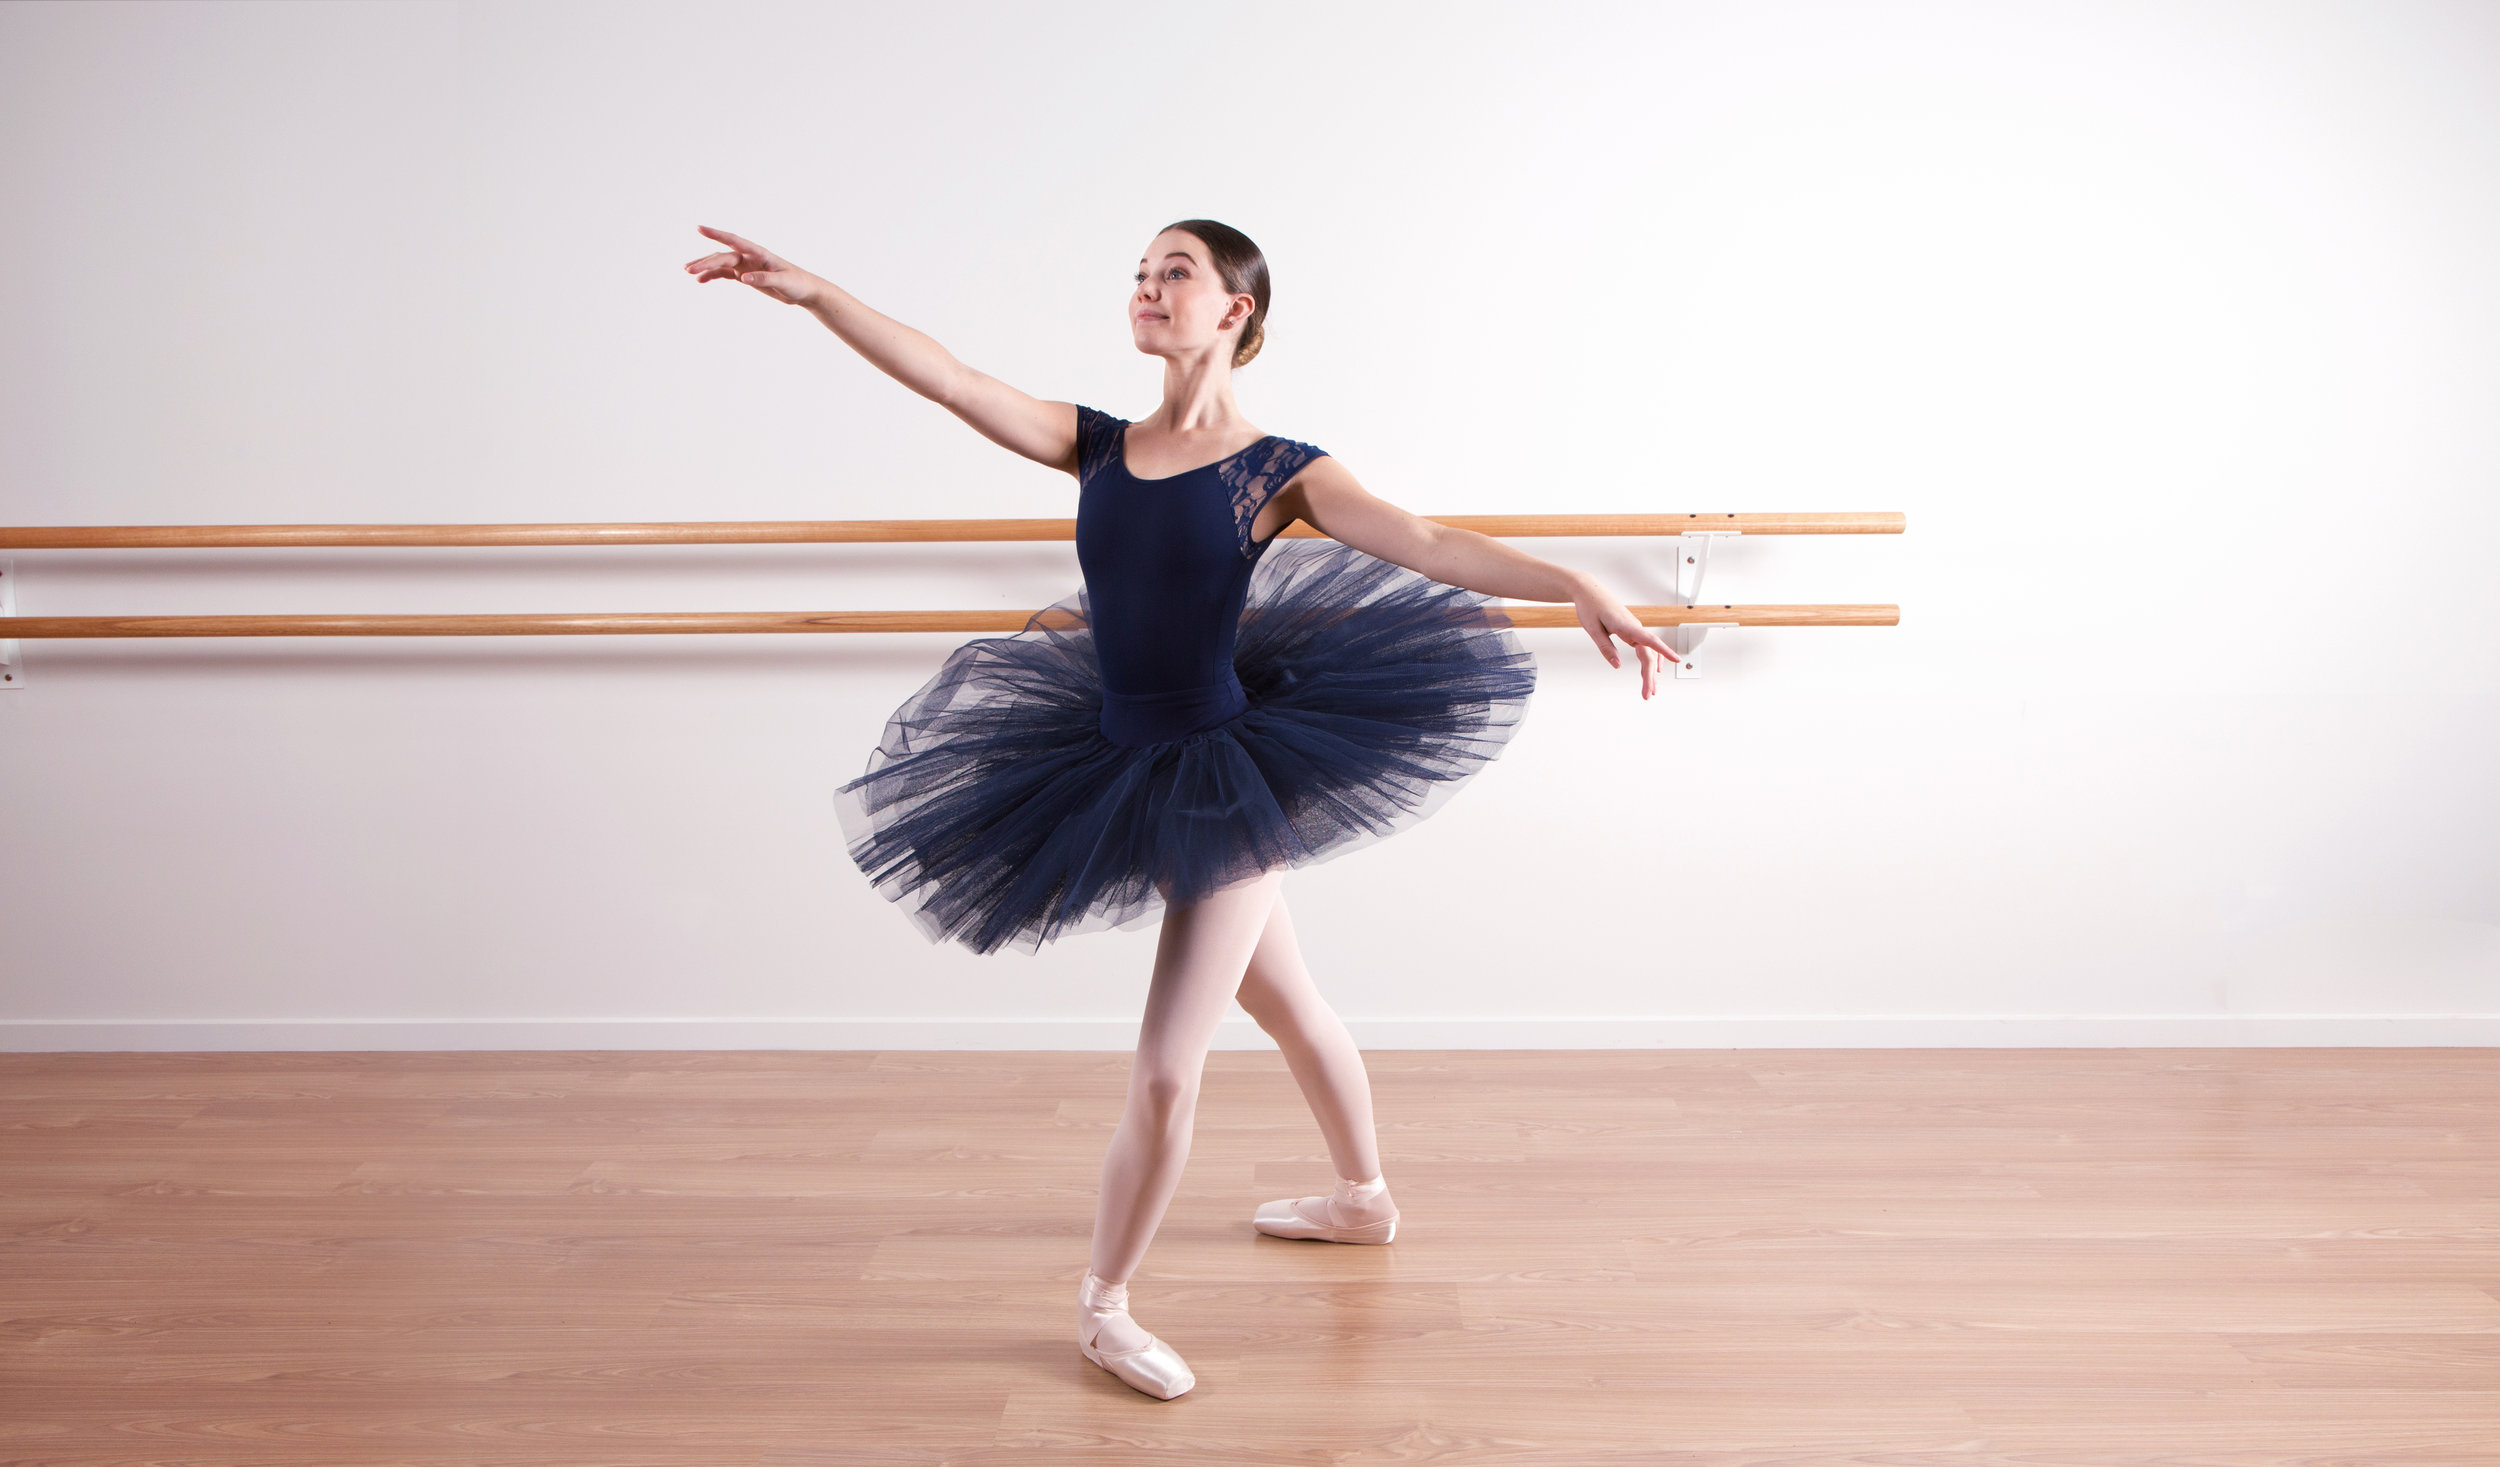 Premium Vector | Ballet. dancers girl ballerina woman happy beautiful girl  in action poses vector illustrations. ballet dancer or ballerina action  dance